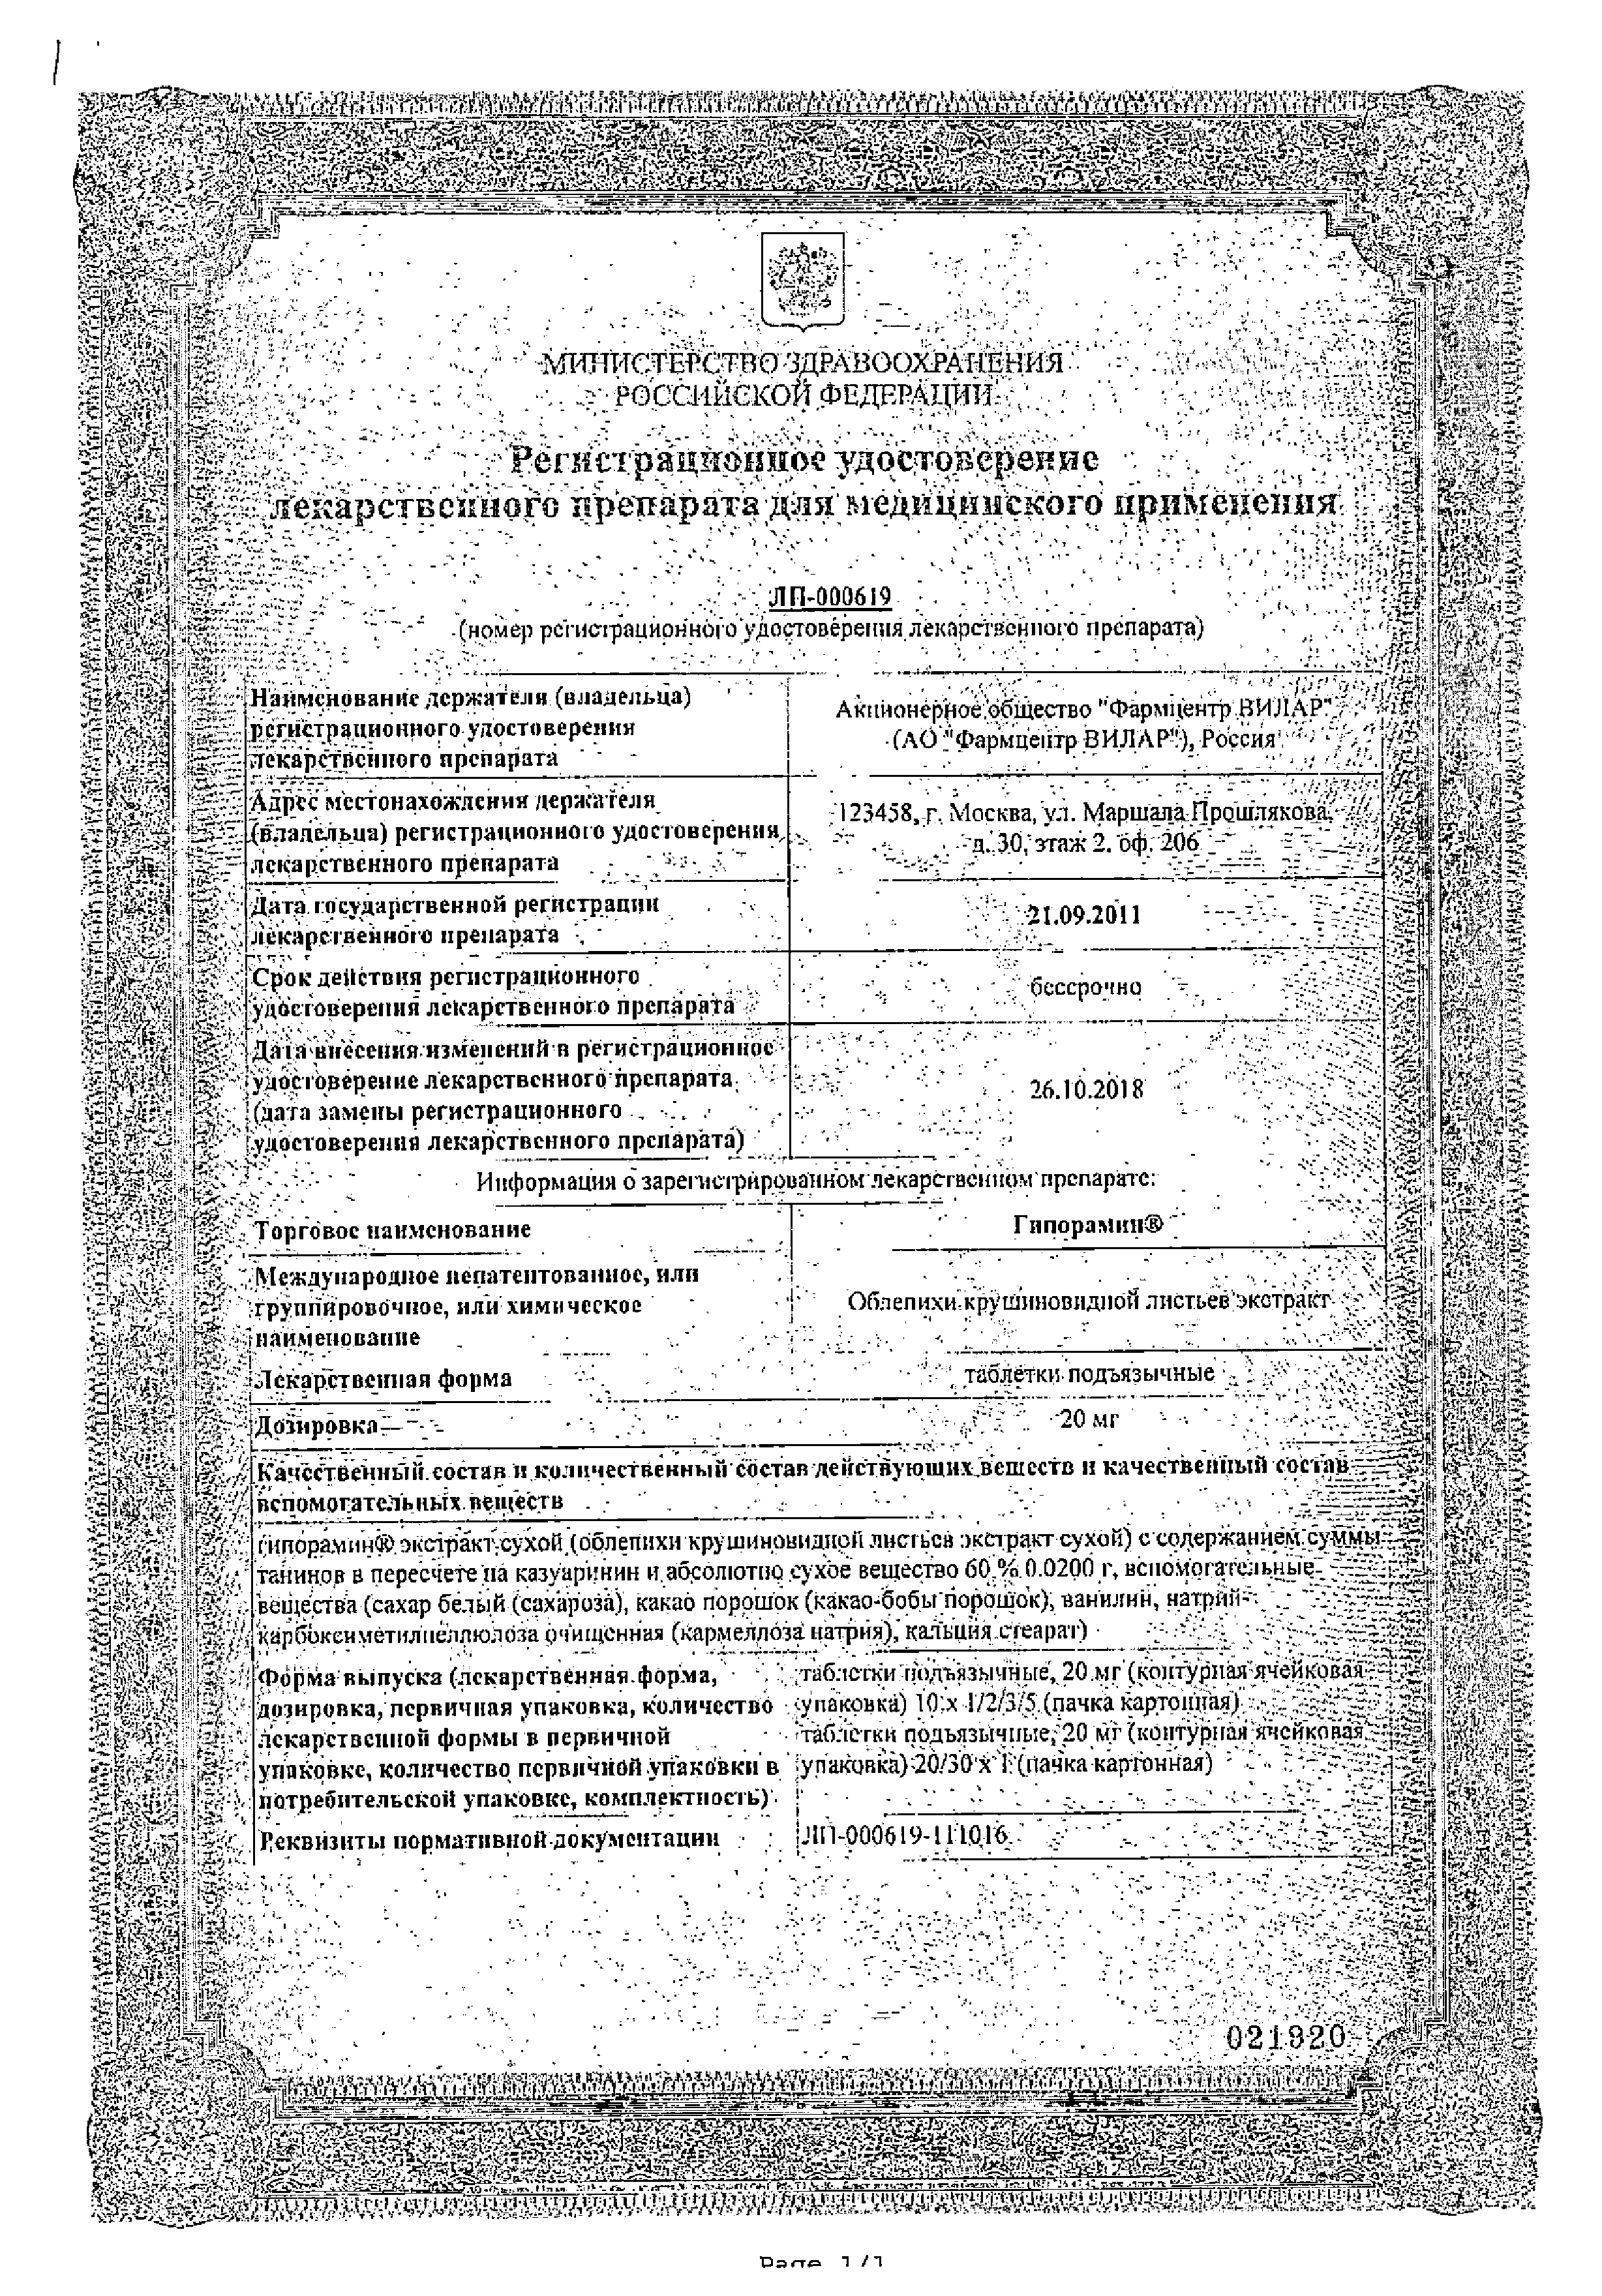 Гипорамин сертификат